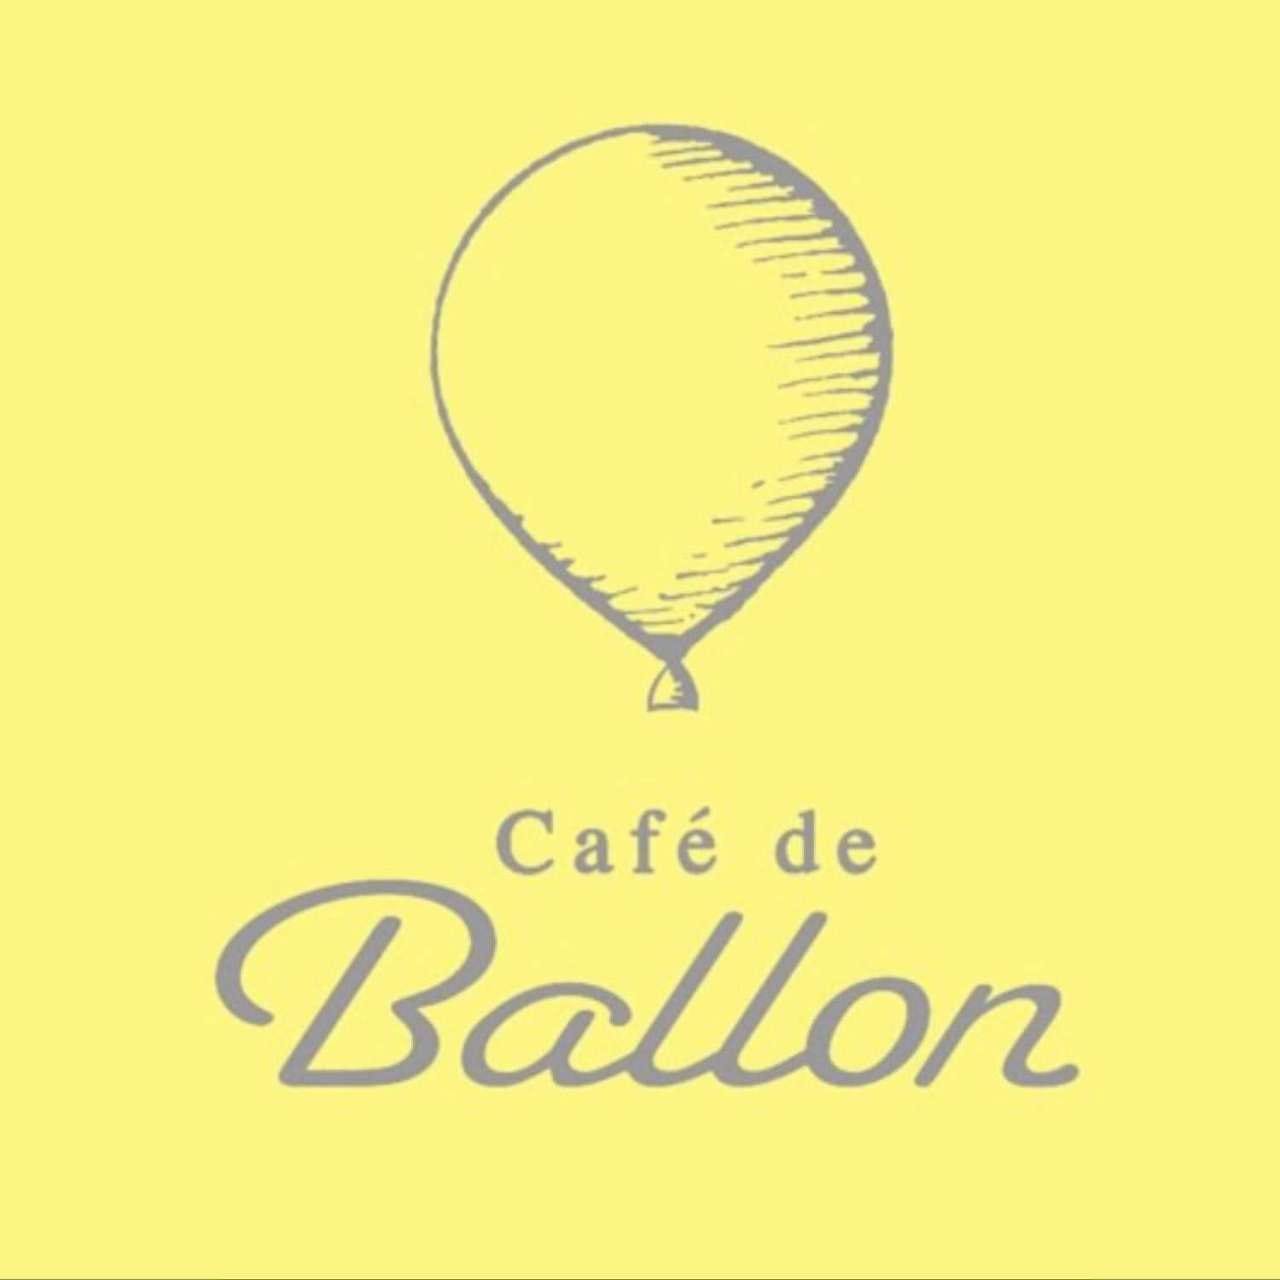 Cafe de Ballon